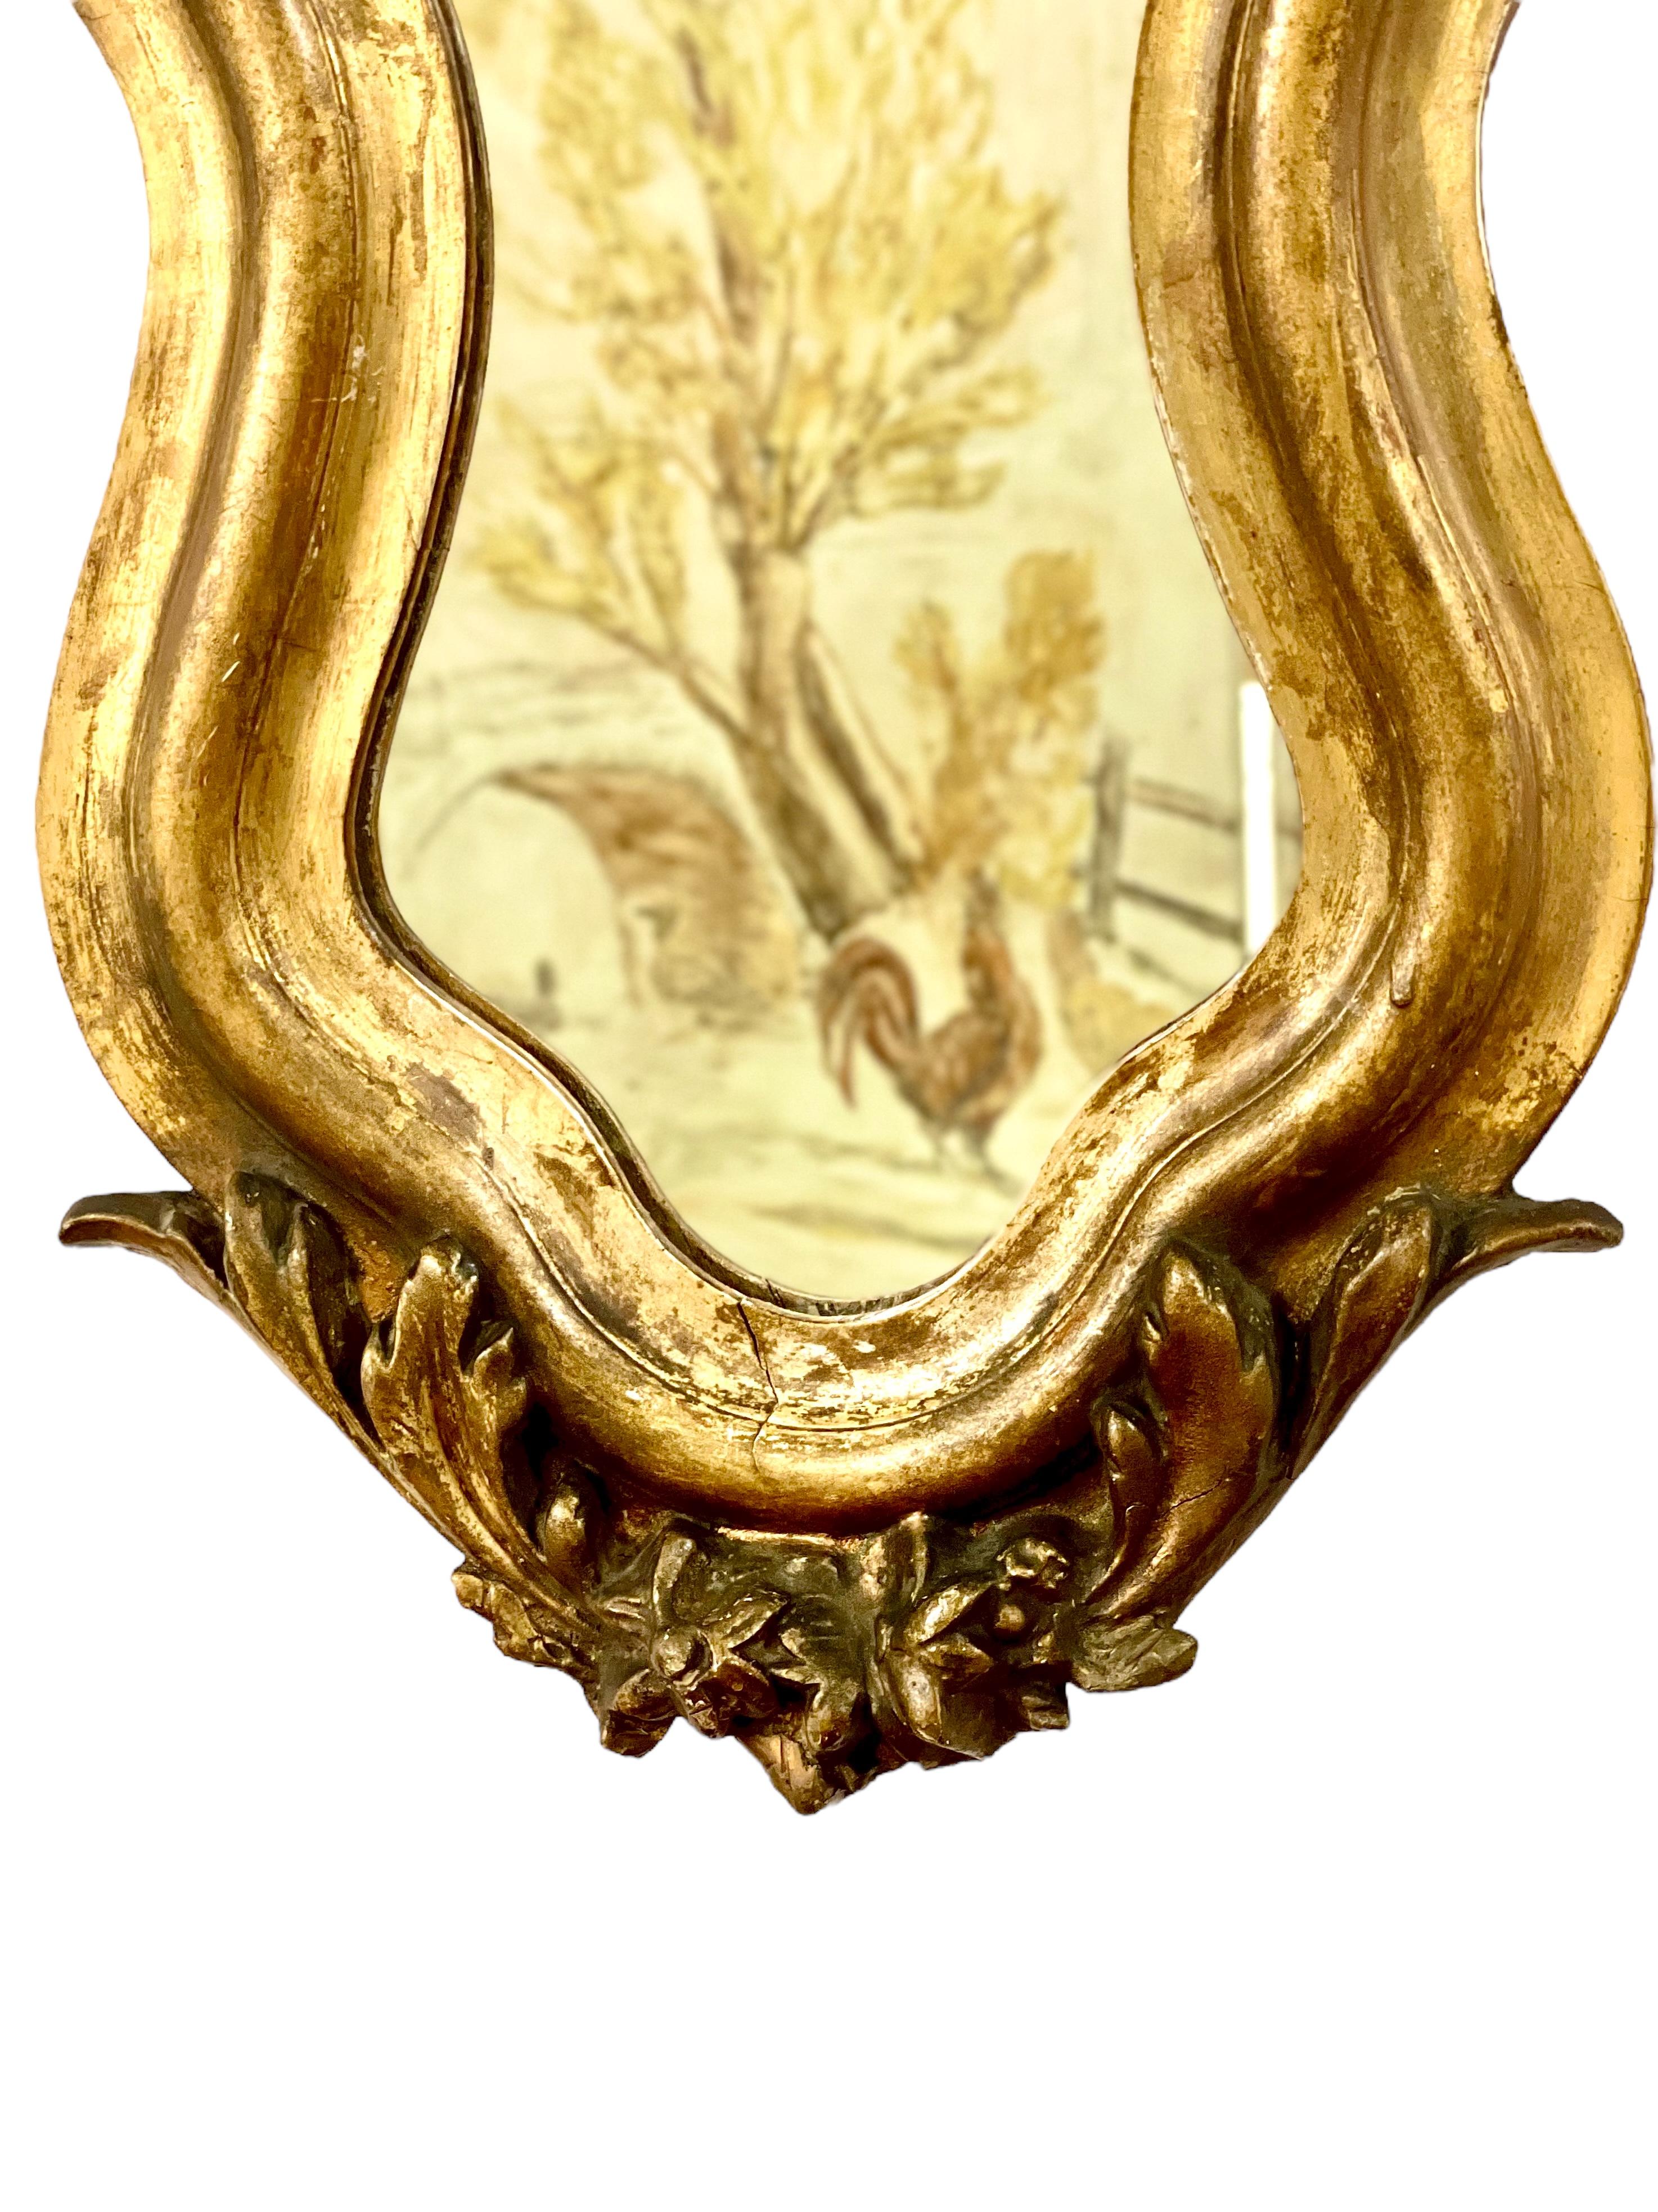 Dieser prächtige Wandspiegel aus vergoldetem Holz aus dem 19. Jahrhundert mit seiner geschwungenen Geigenform und seinem üppigen Dekor im Rokoko-Stil würde jedem Raum einen glänzenden, goldenen Akzent verleihen. Der spektakuläre Rahmen ist an den